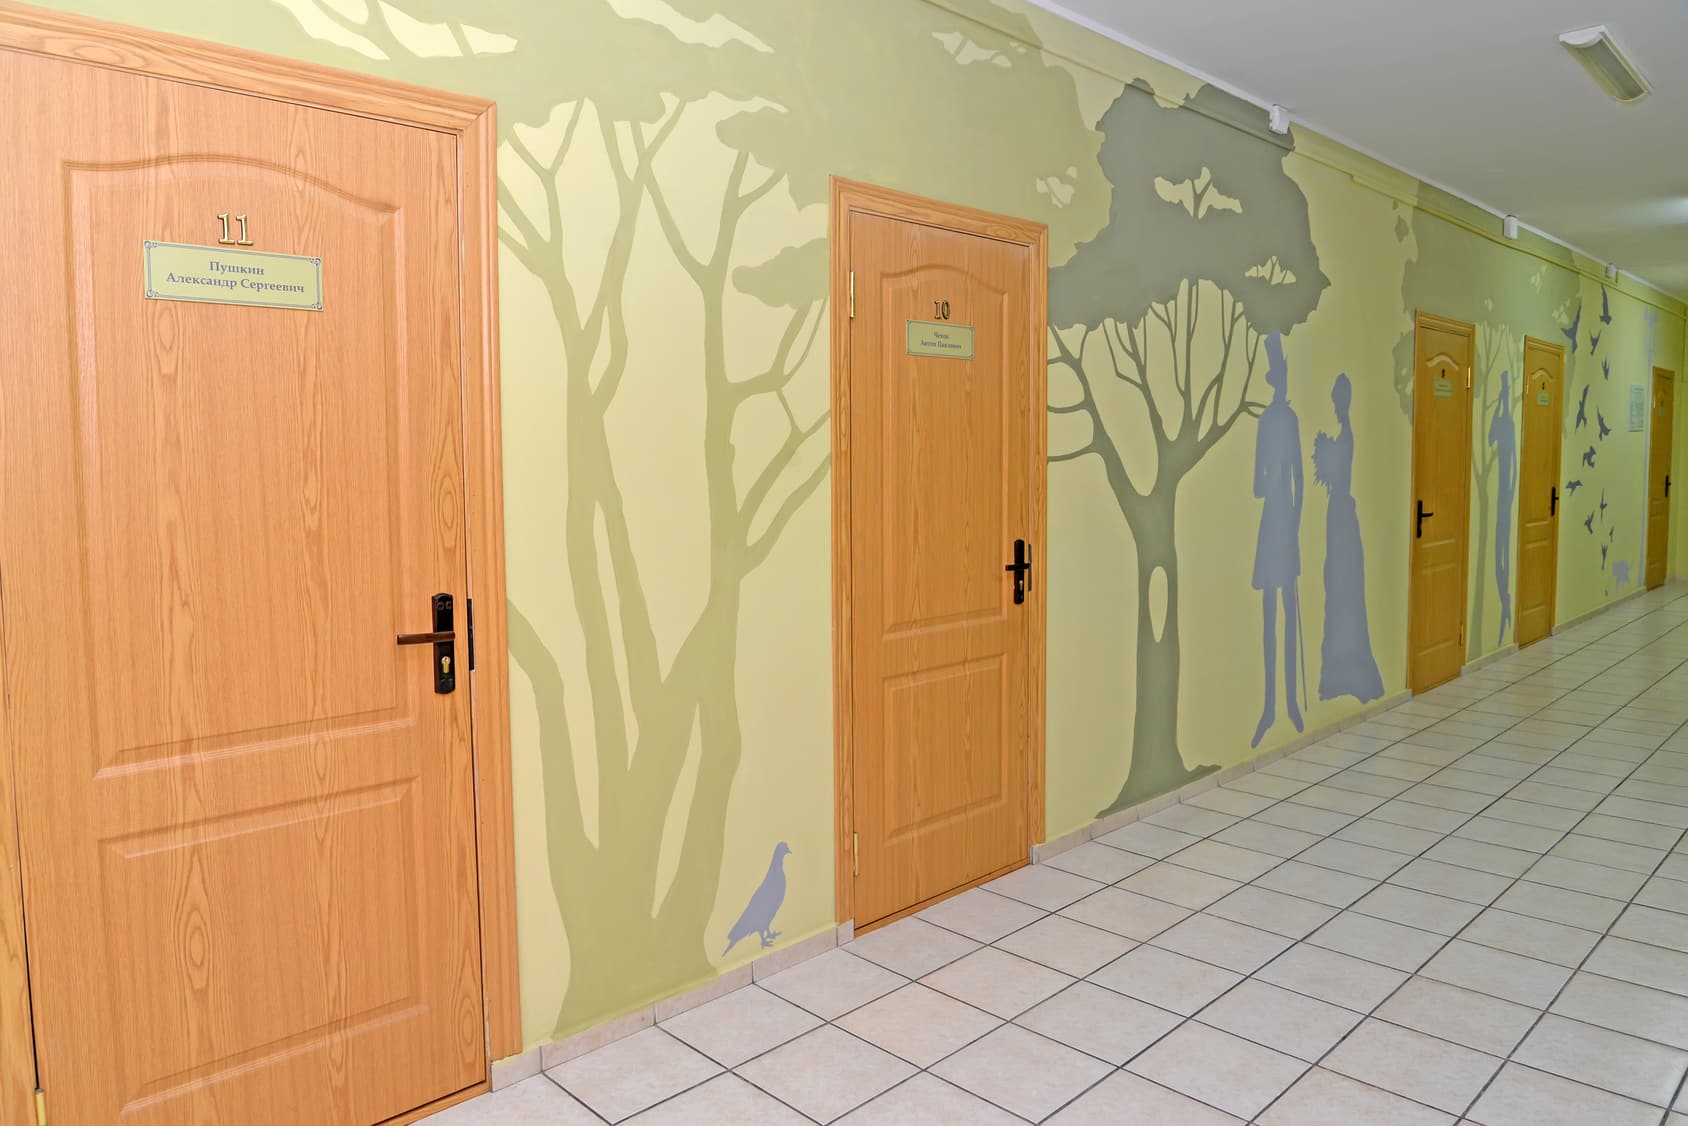 peindre un couloir